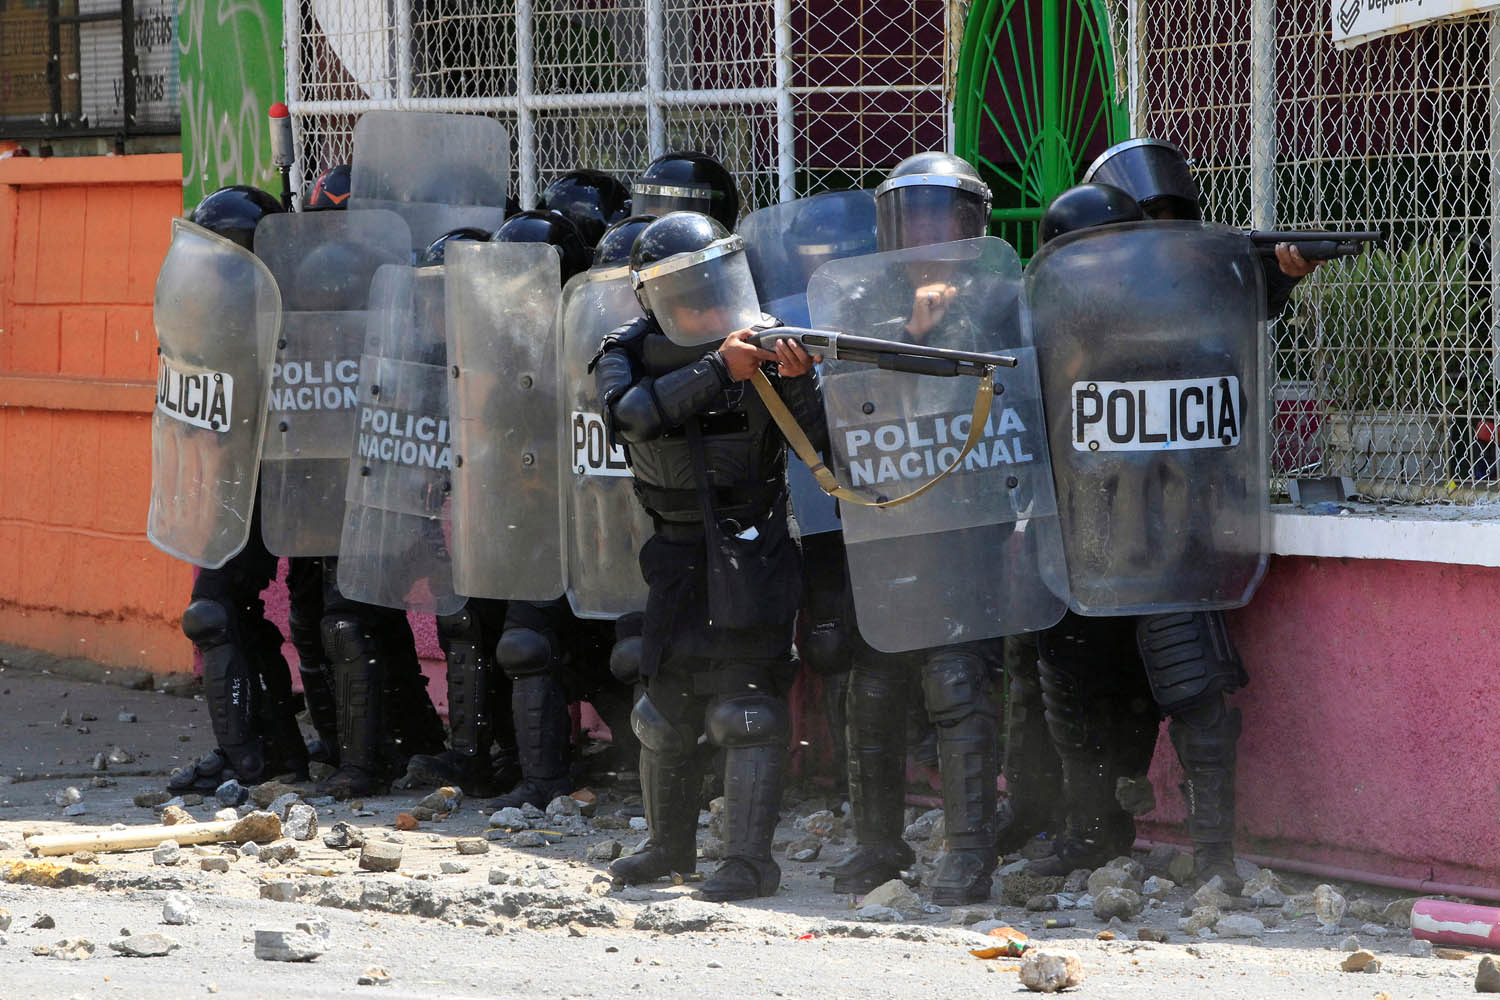 CIDH denuncia grave violación de derechos humanos y 76 muertos en Nicaragua